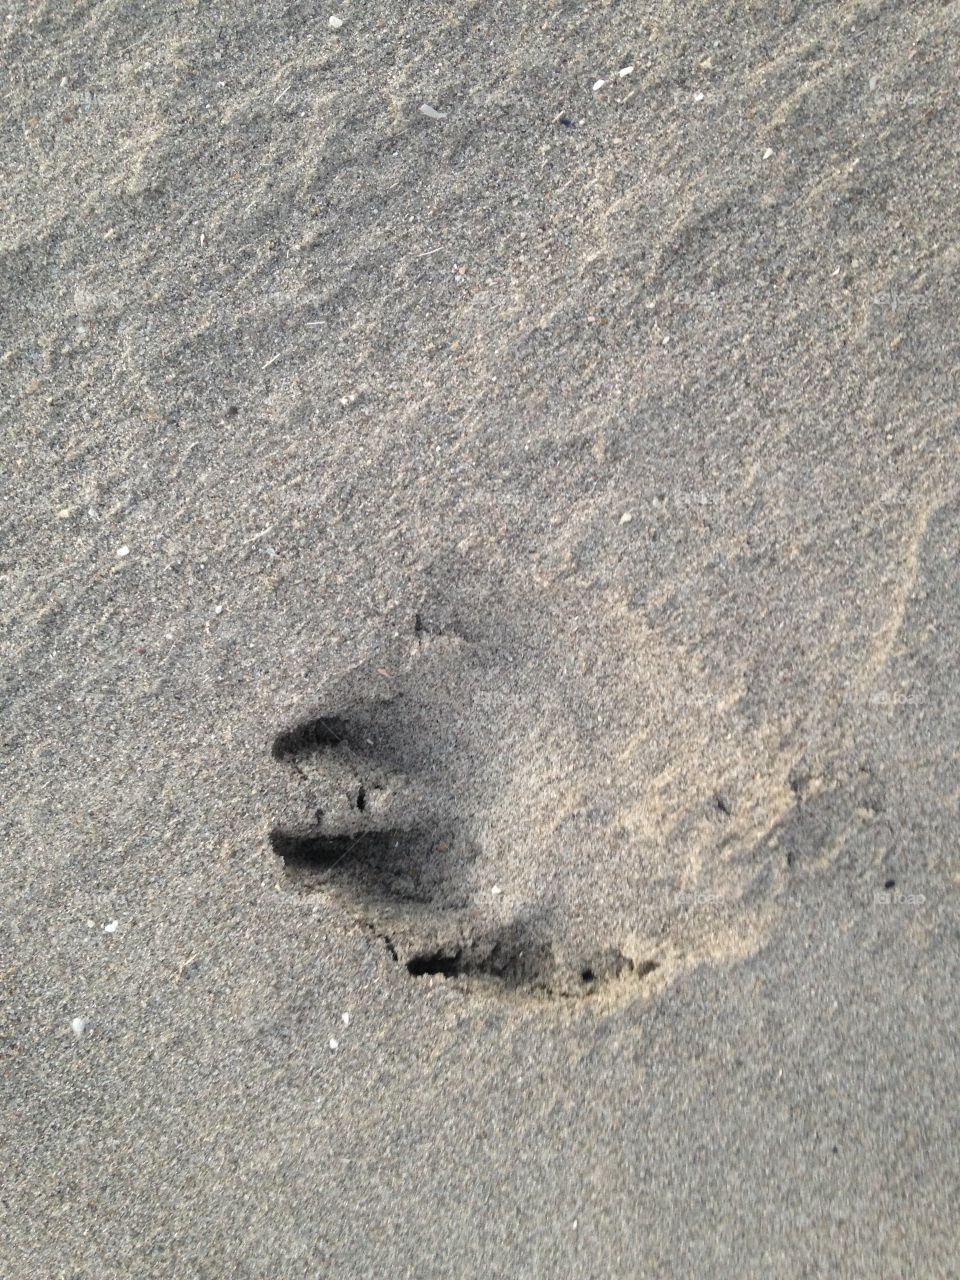 Sand, Beach, Footprint, Seashore, Foot